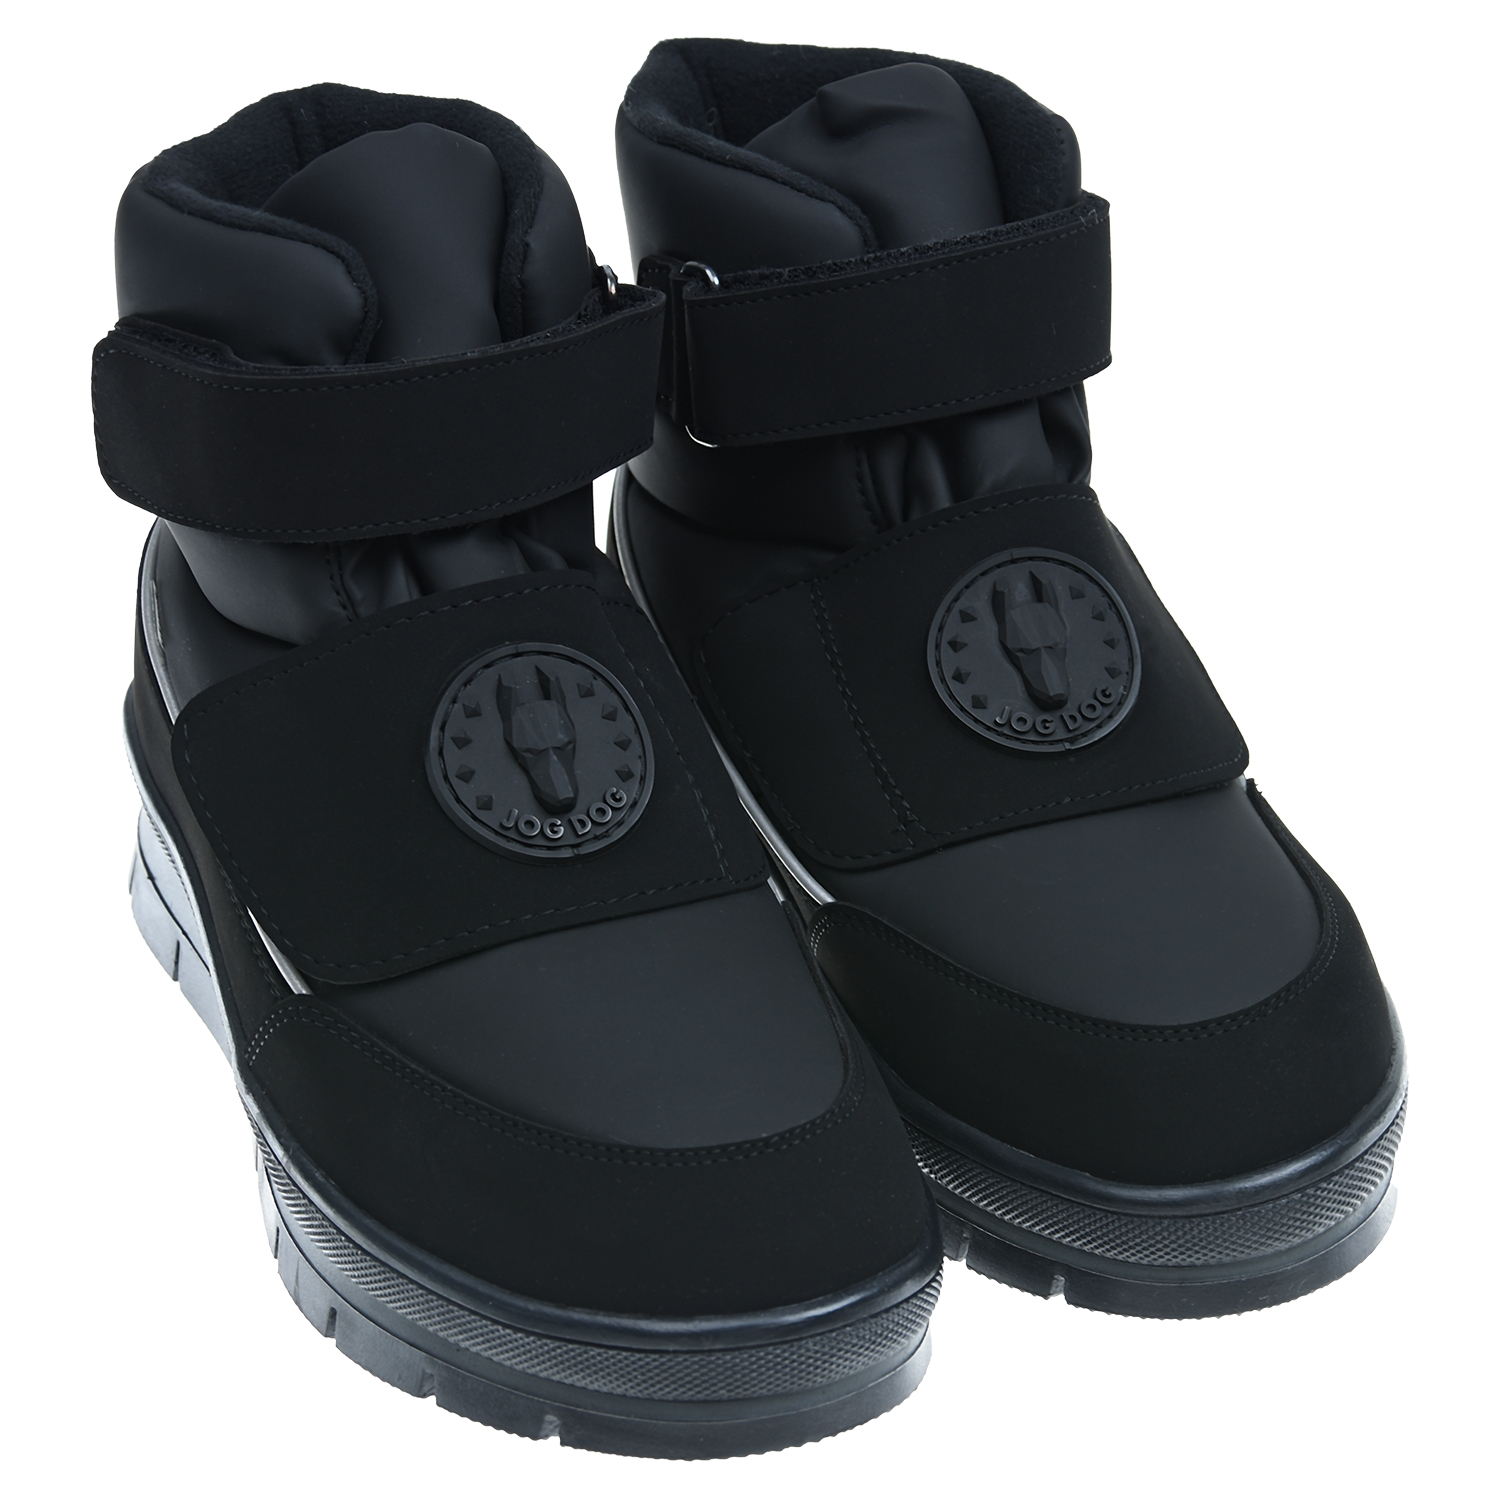 Черные мембранные сапоги Jog Dog детские, размер 34, цвет черный - фото 1